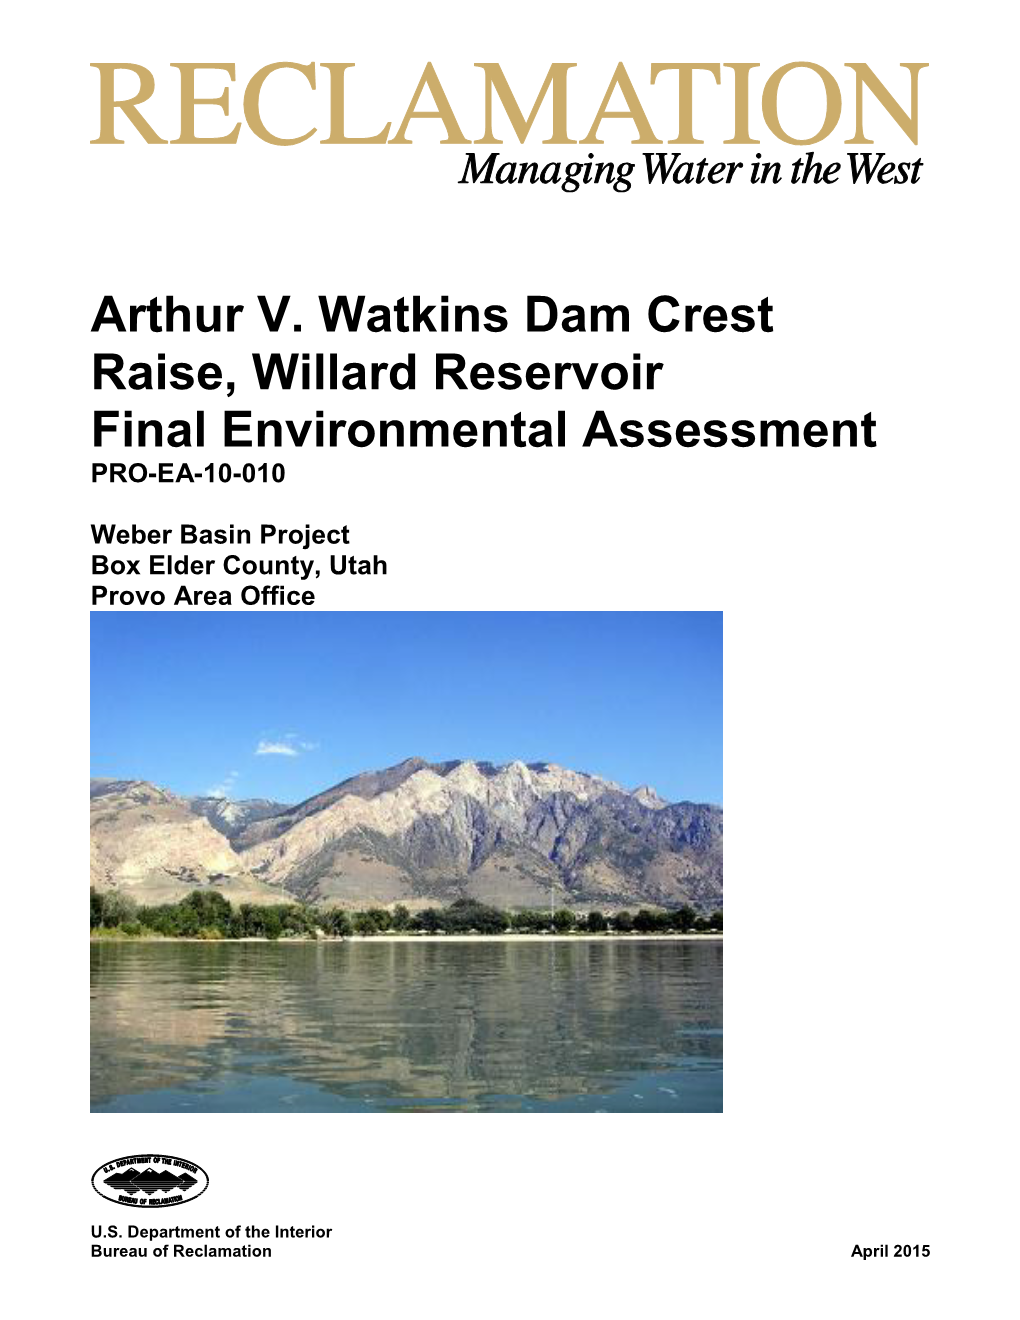 Arthur V. Watkins Dam Crest Raise, Willard Reservoir Final Environmental Assessment PRO-EA-10-010